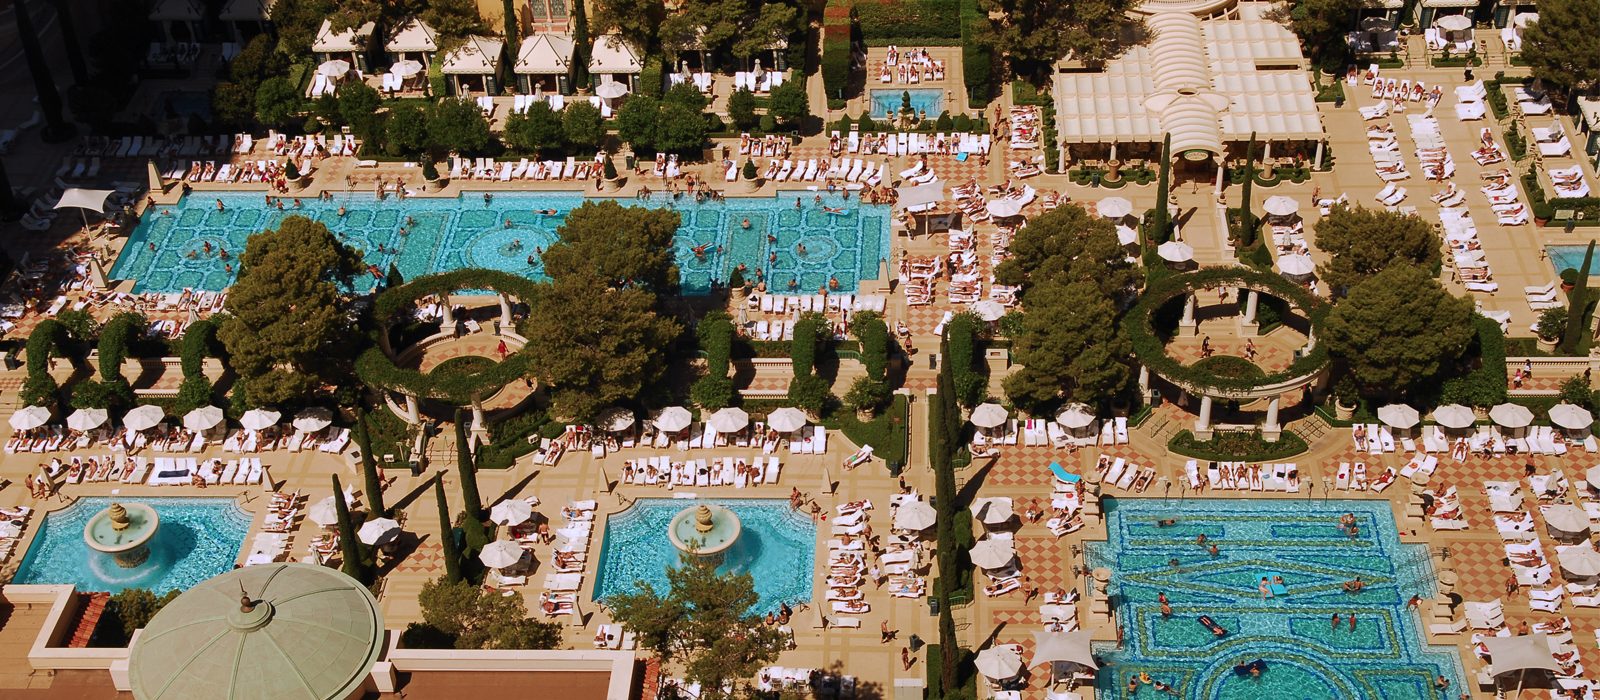 10 Best Las Vegas Pool Parties